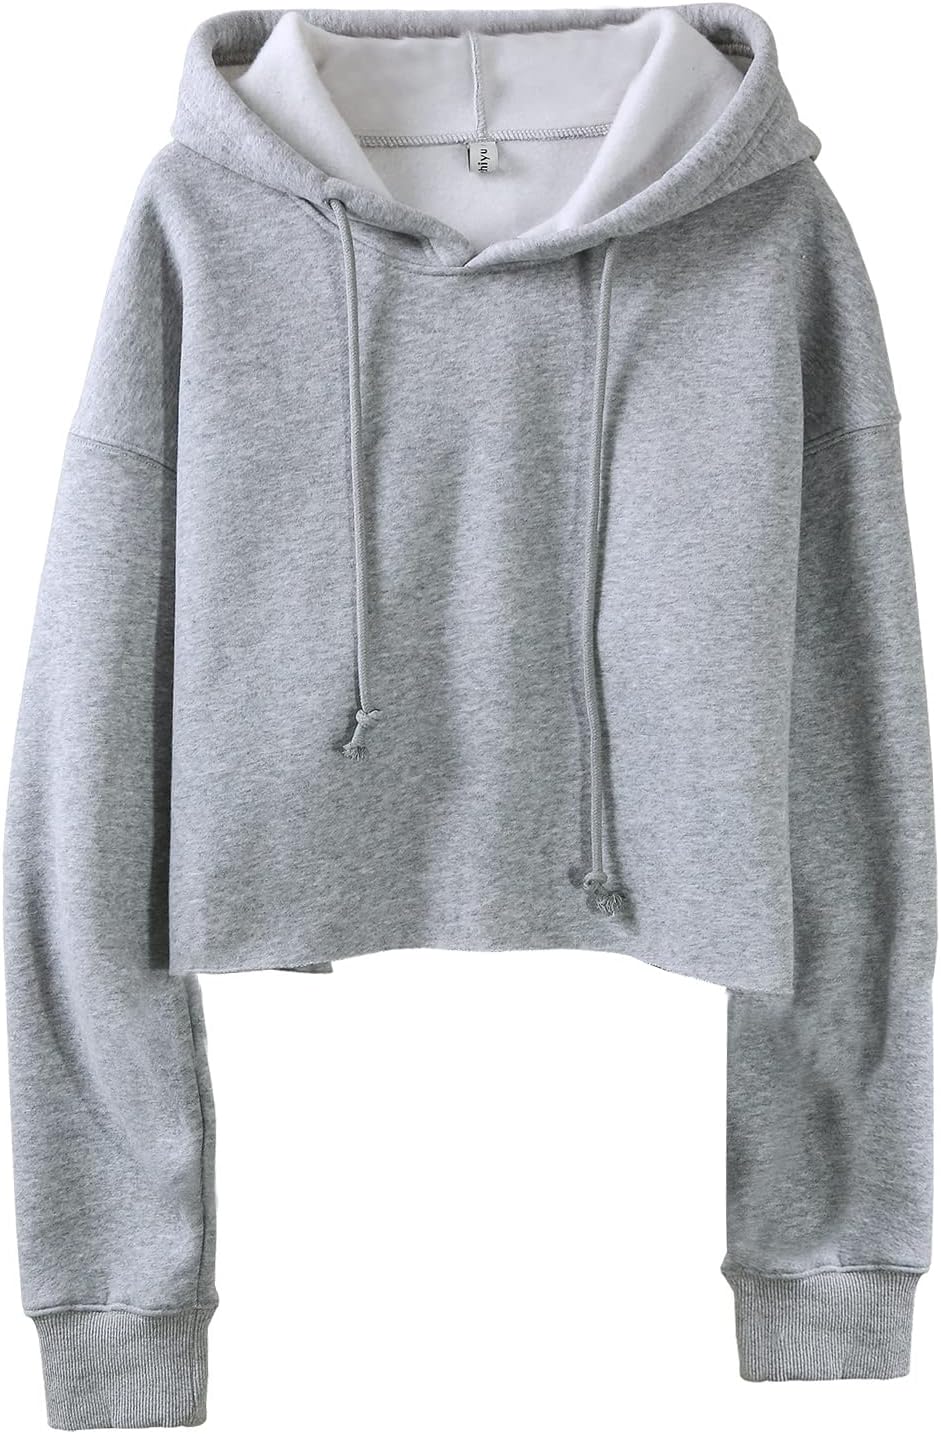 NTG Fad Heather Grey / Large Women's Cropped Hoodies Fleece Crop Top Sweatshirt